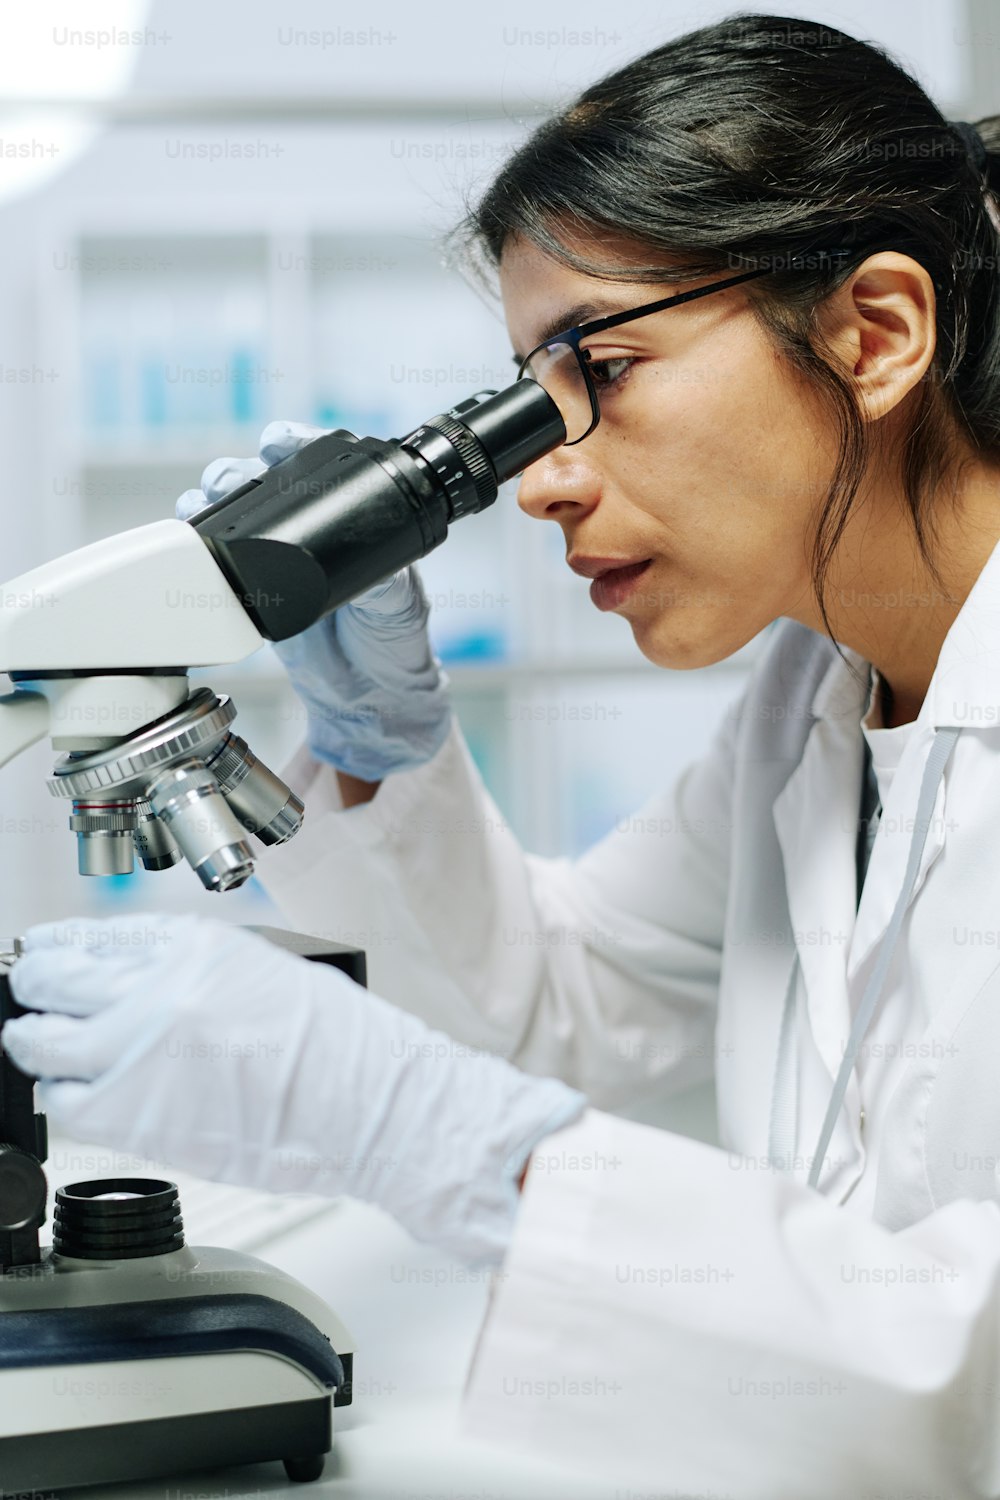 Microbiologista ou virologista do sexo feminino sério usando microscópio em laboratório enquanto faz pesquisa científica ou experimento